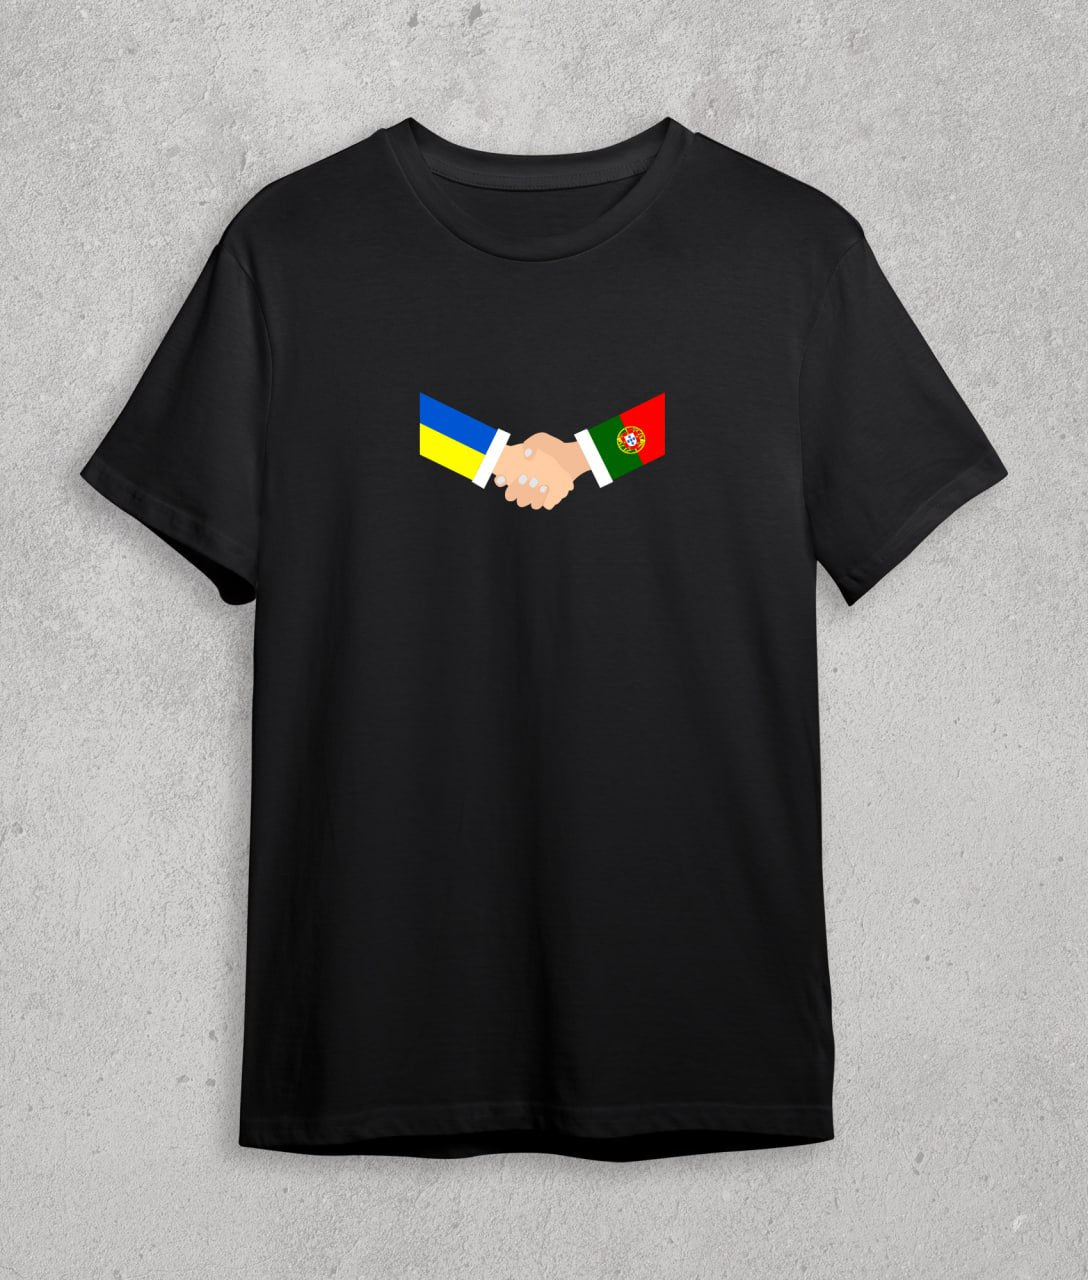 T-shirt Portugal + Ukraine (handshake)